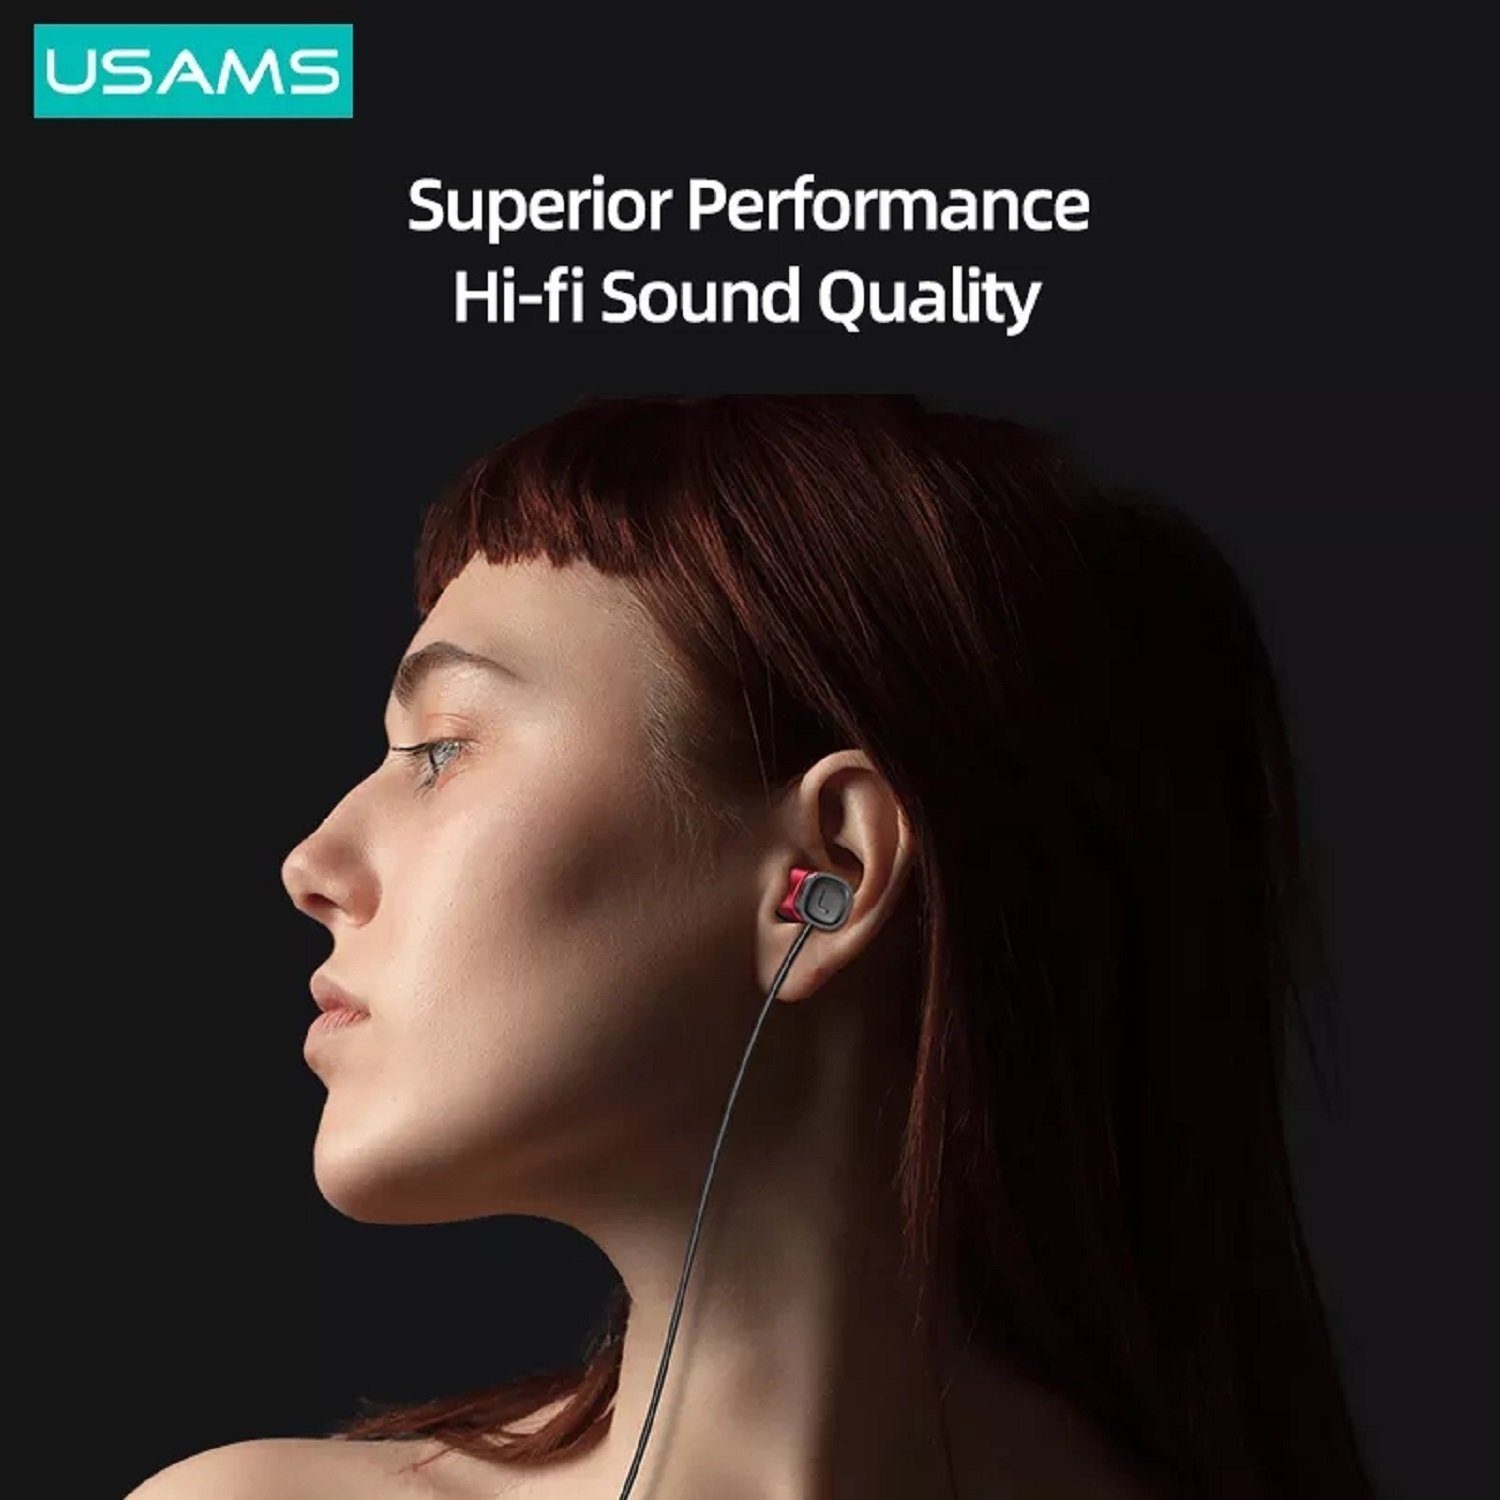 intergrierte und Rot Stereo Bass HiFi Type für USAMS (3,5mm) Musik, Typ 3,5mm, In-Ear-Kopfhörer, Anrufe On-Ear-Kopfhörer Steuerug EP-46 Ohrhörer Type-C, Mikrofon) C 3,5mm, Kopfhörerstecker (Kabelgebunden, 1,2m,